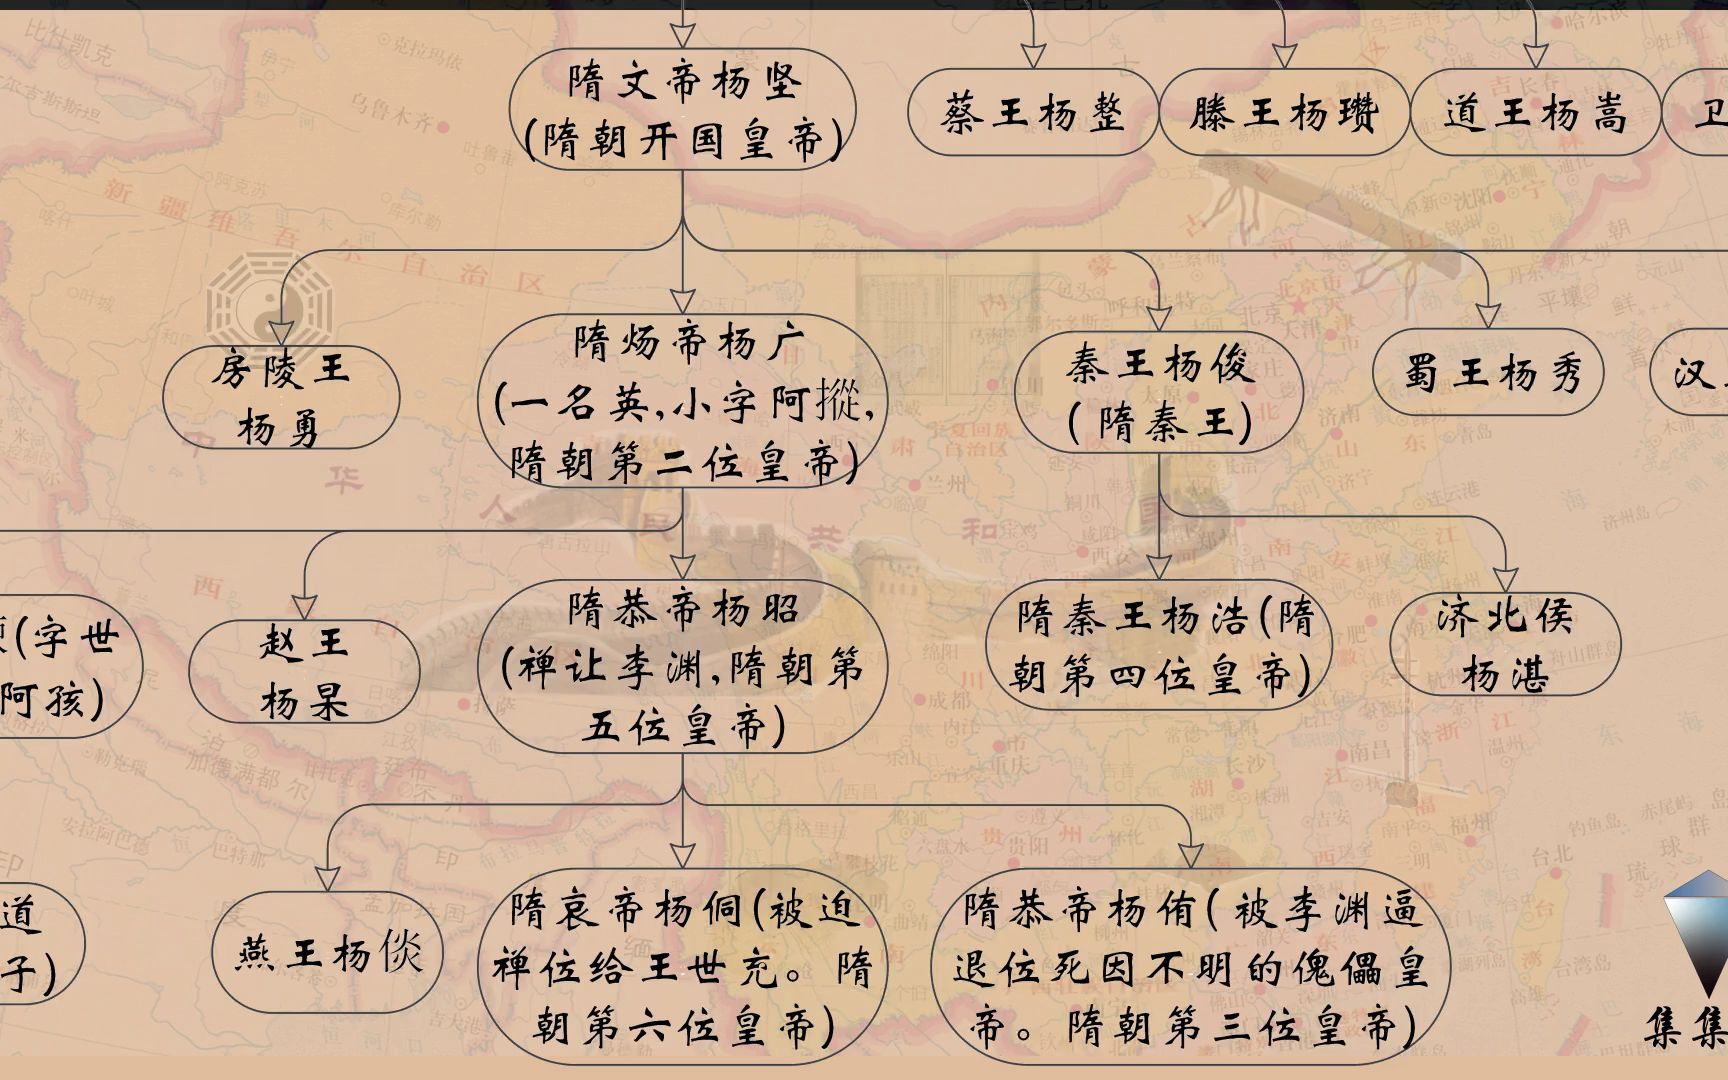 隋朝皇帝顺序列表图片